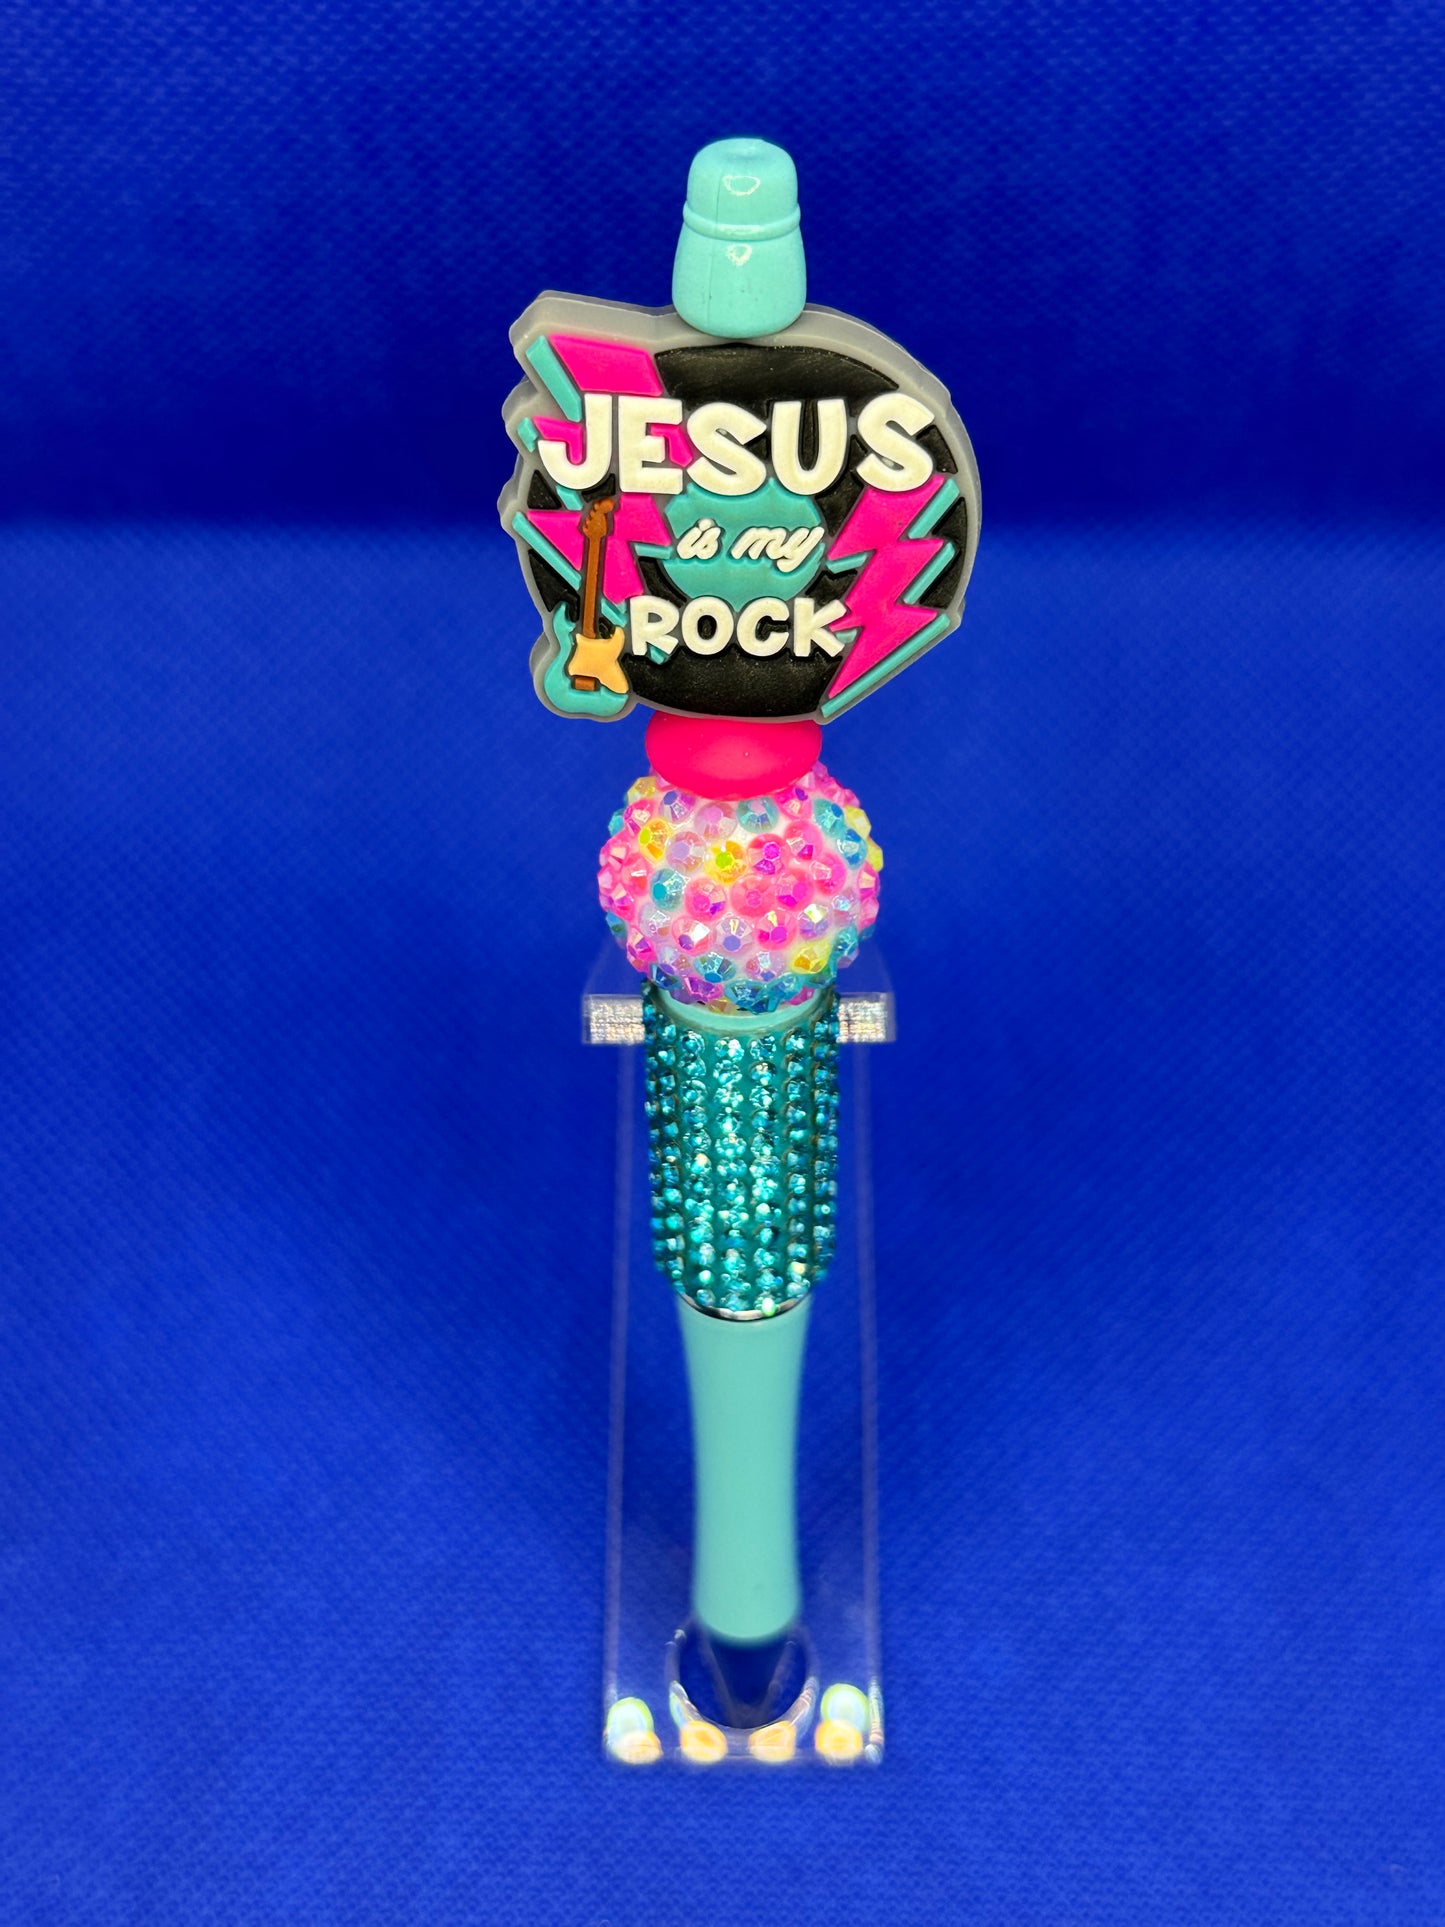 Jesus is my rock pen